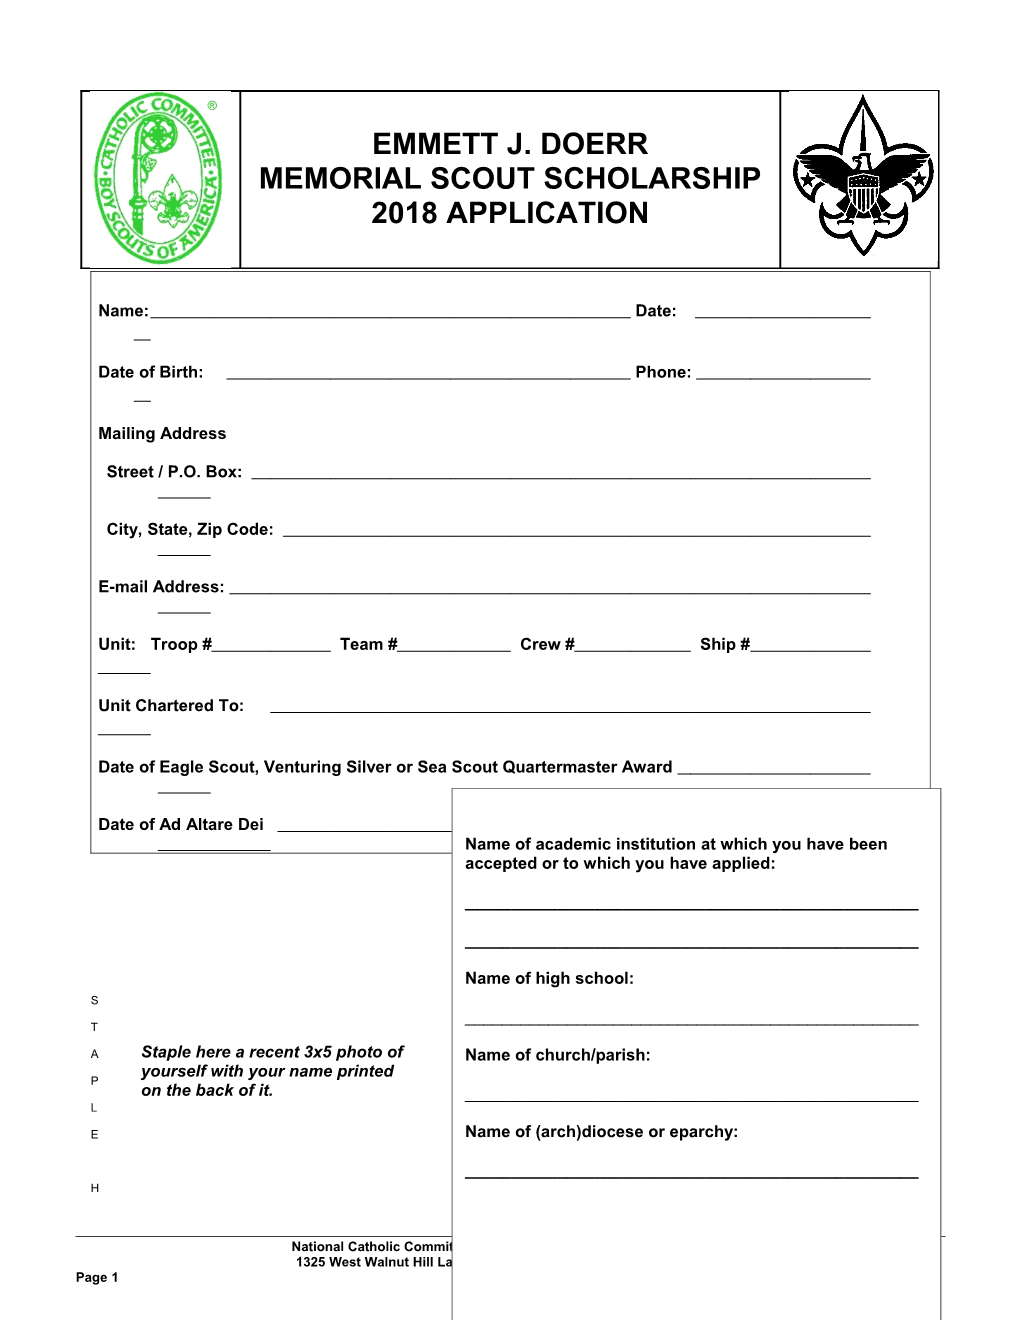 Emmett J. Doerr Memorial Scout Scholarship Application